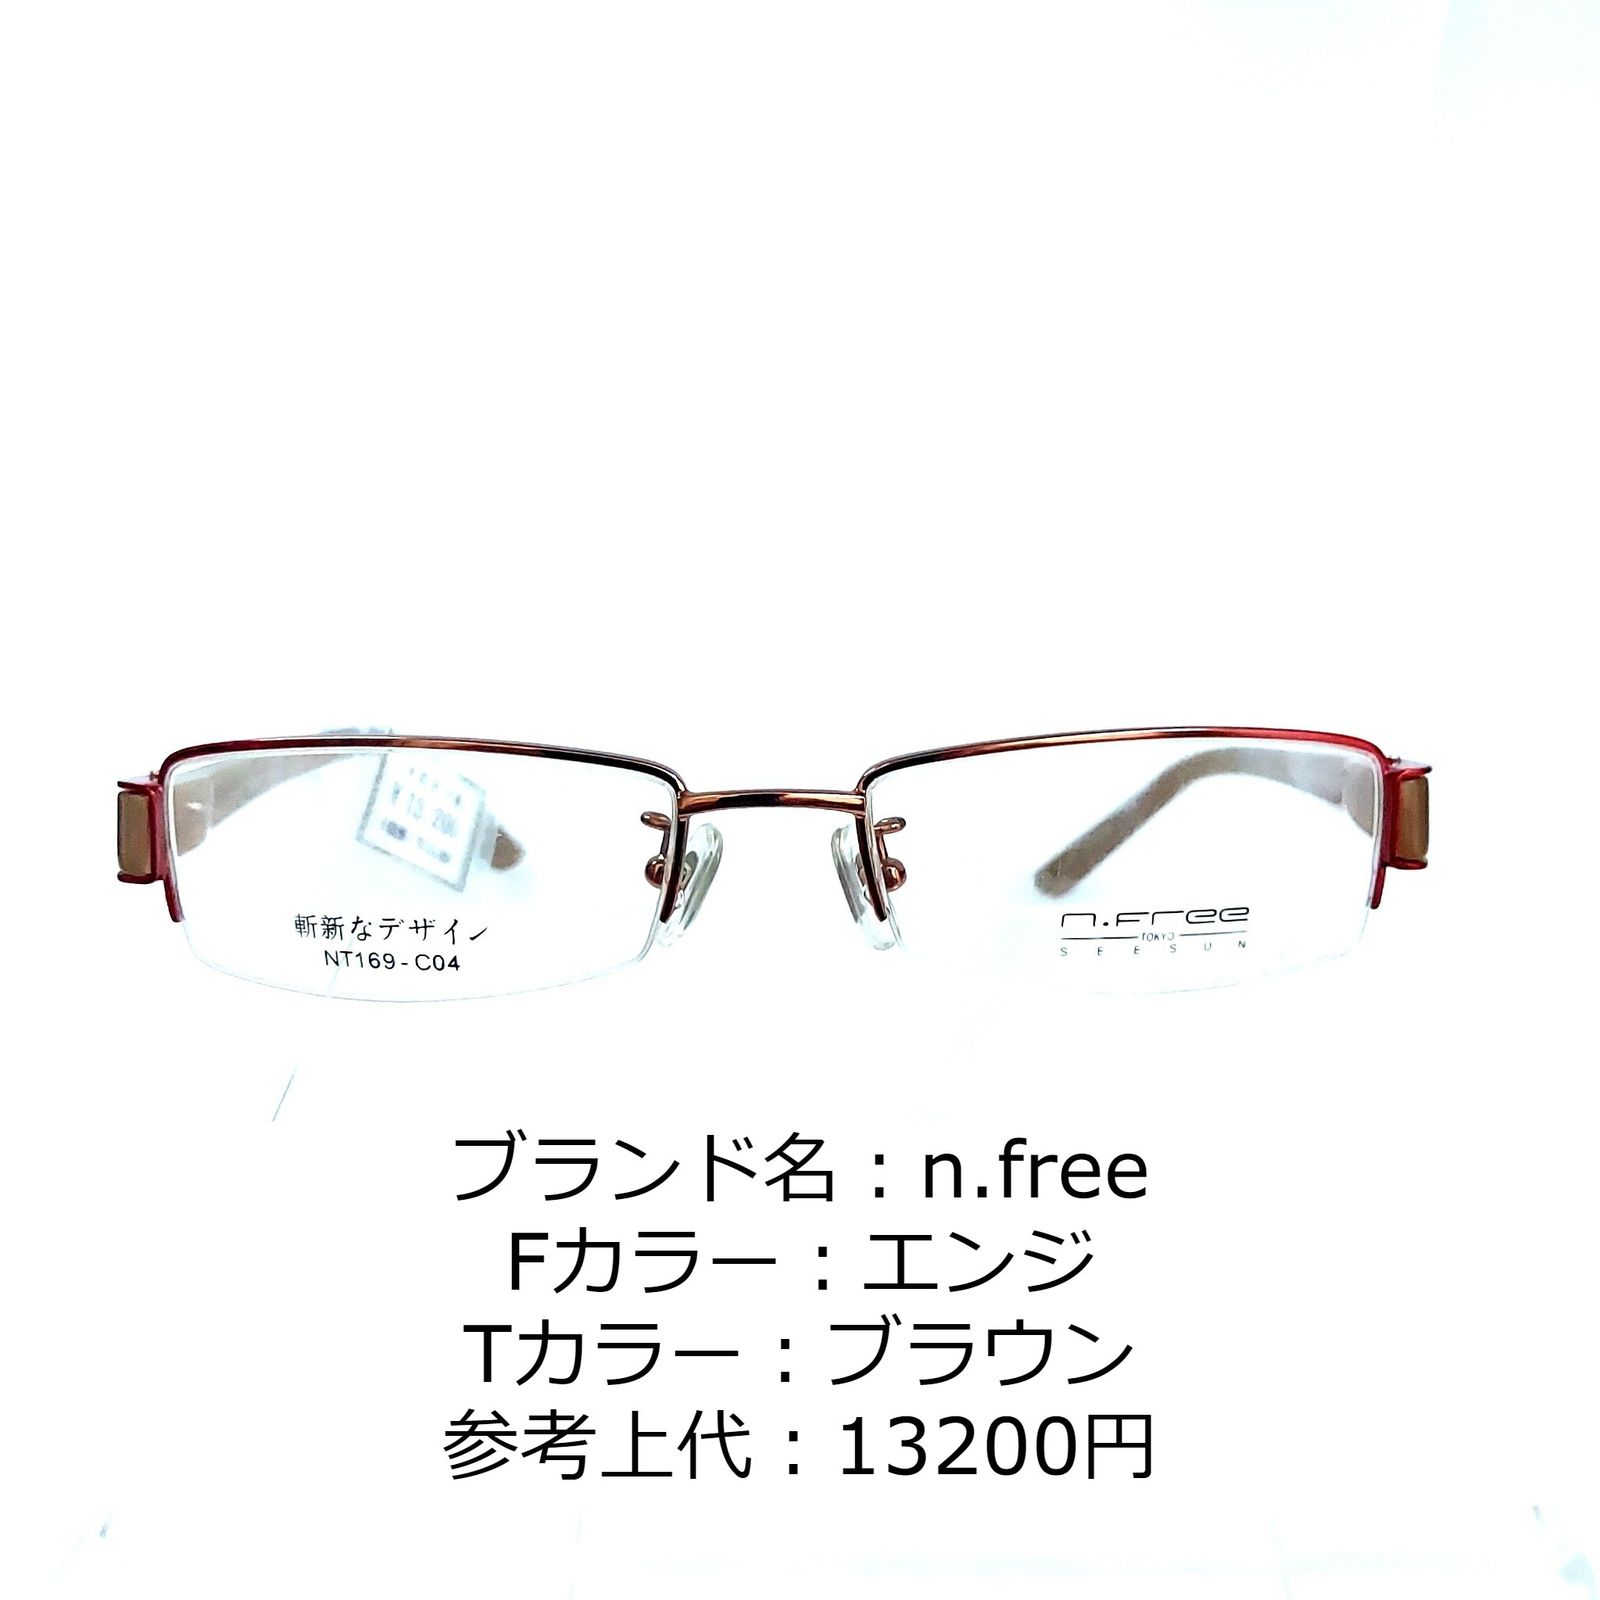 再値下げ No.1153-メガネ n.free【フレームのみ価格】 サングラス